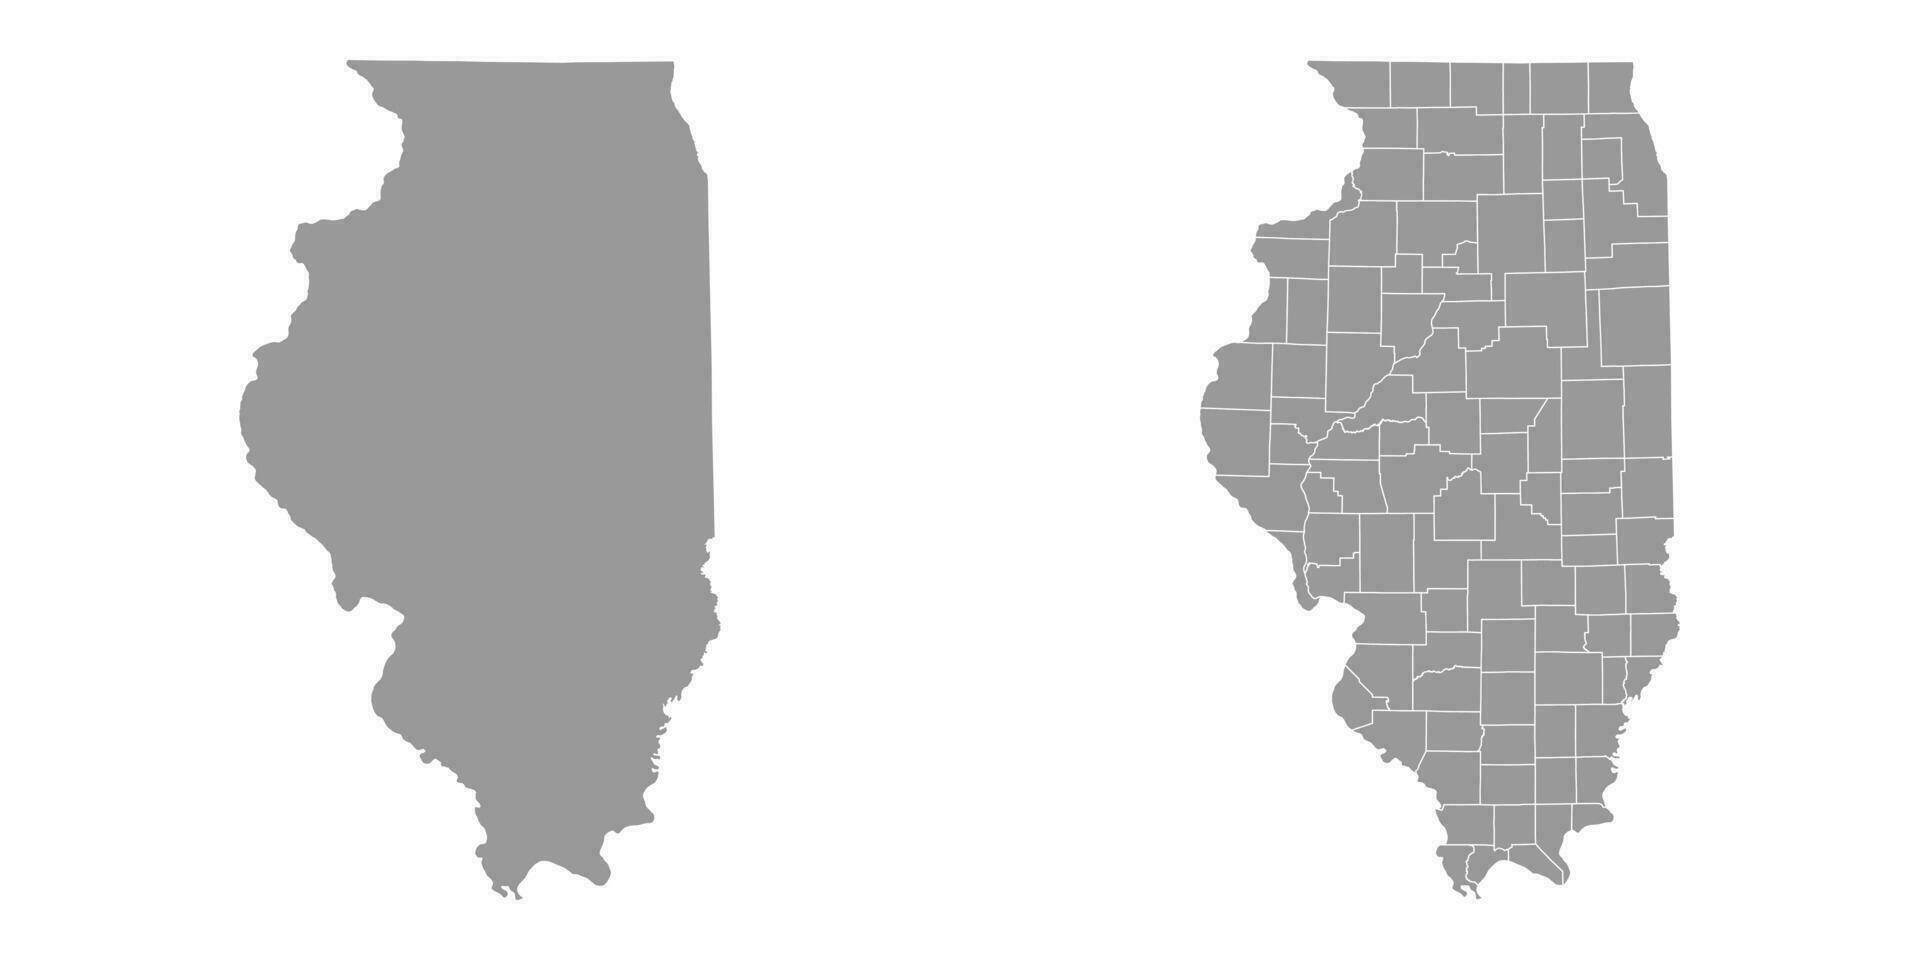 Illinois Estado cinzento mapas. vetor ilustração.